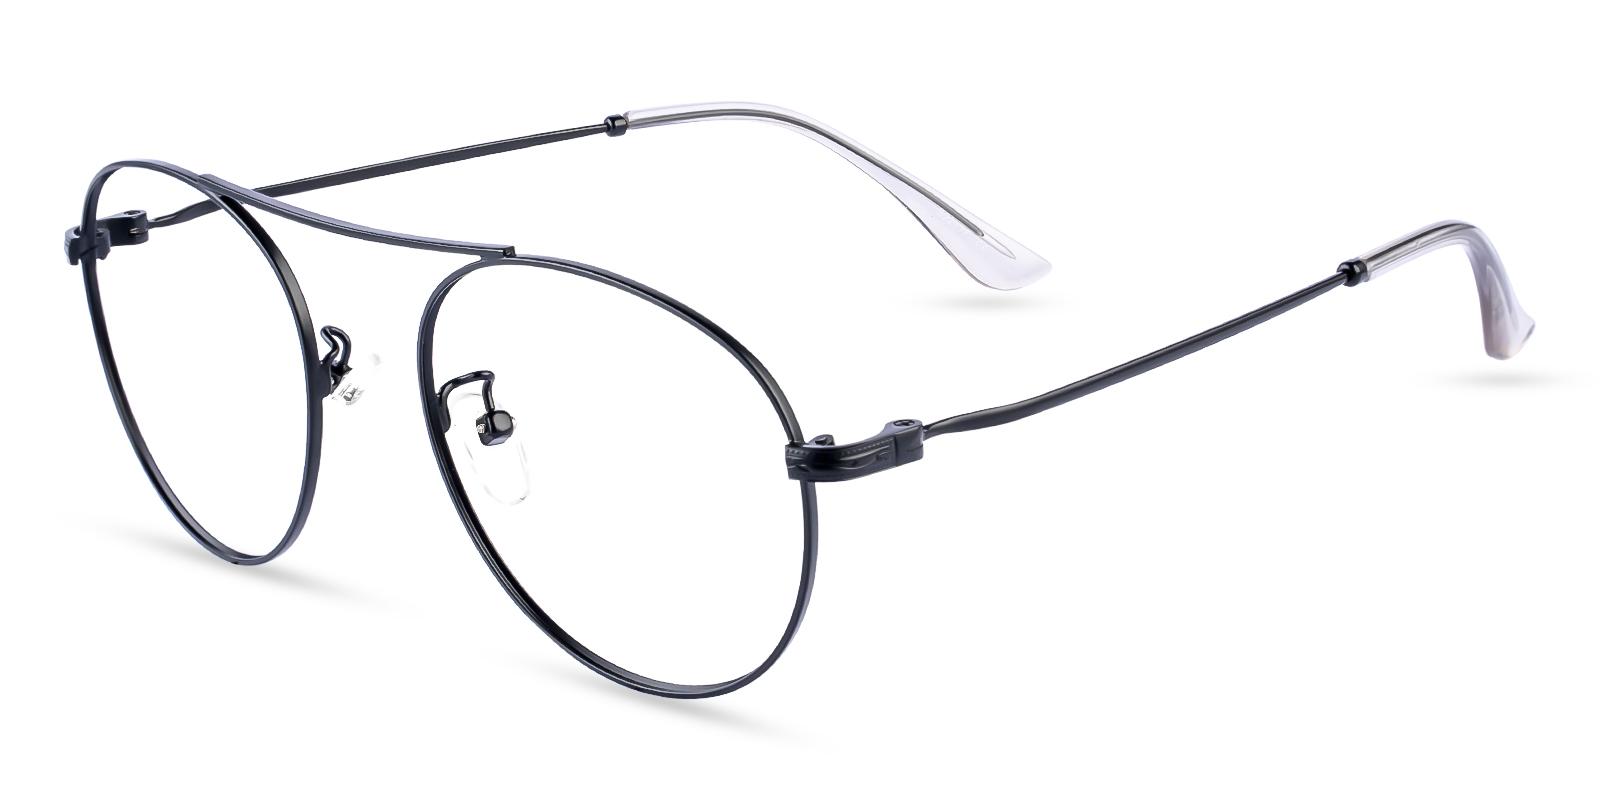 Ellie Black Metal Eyeglasses , NosePads Frames from ABBE Glasses